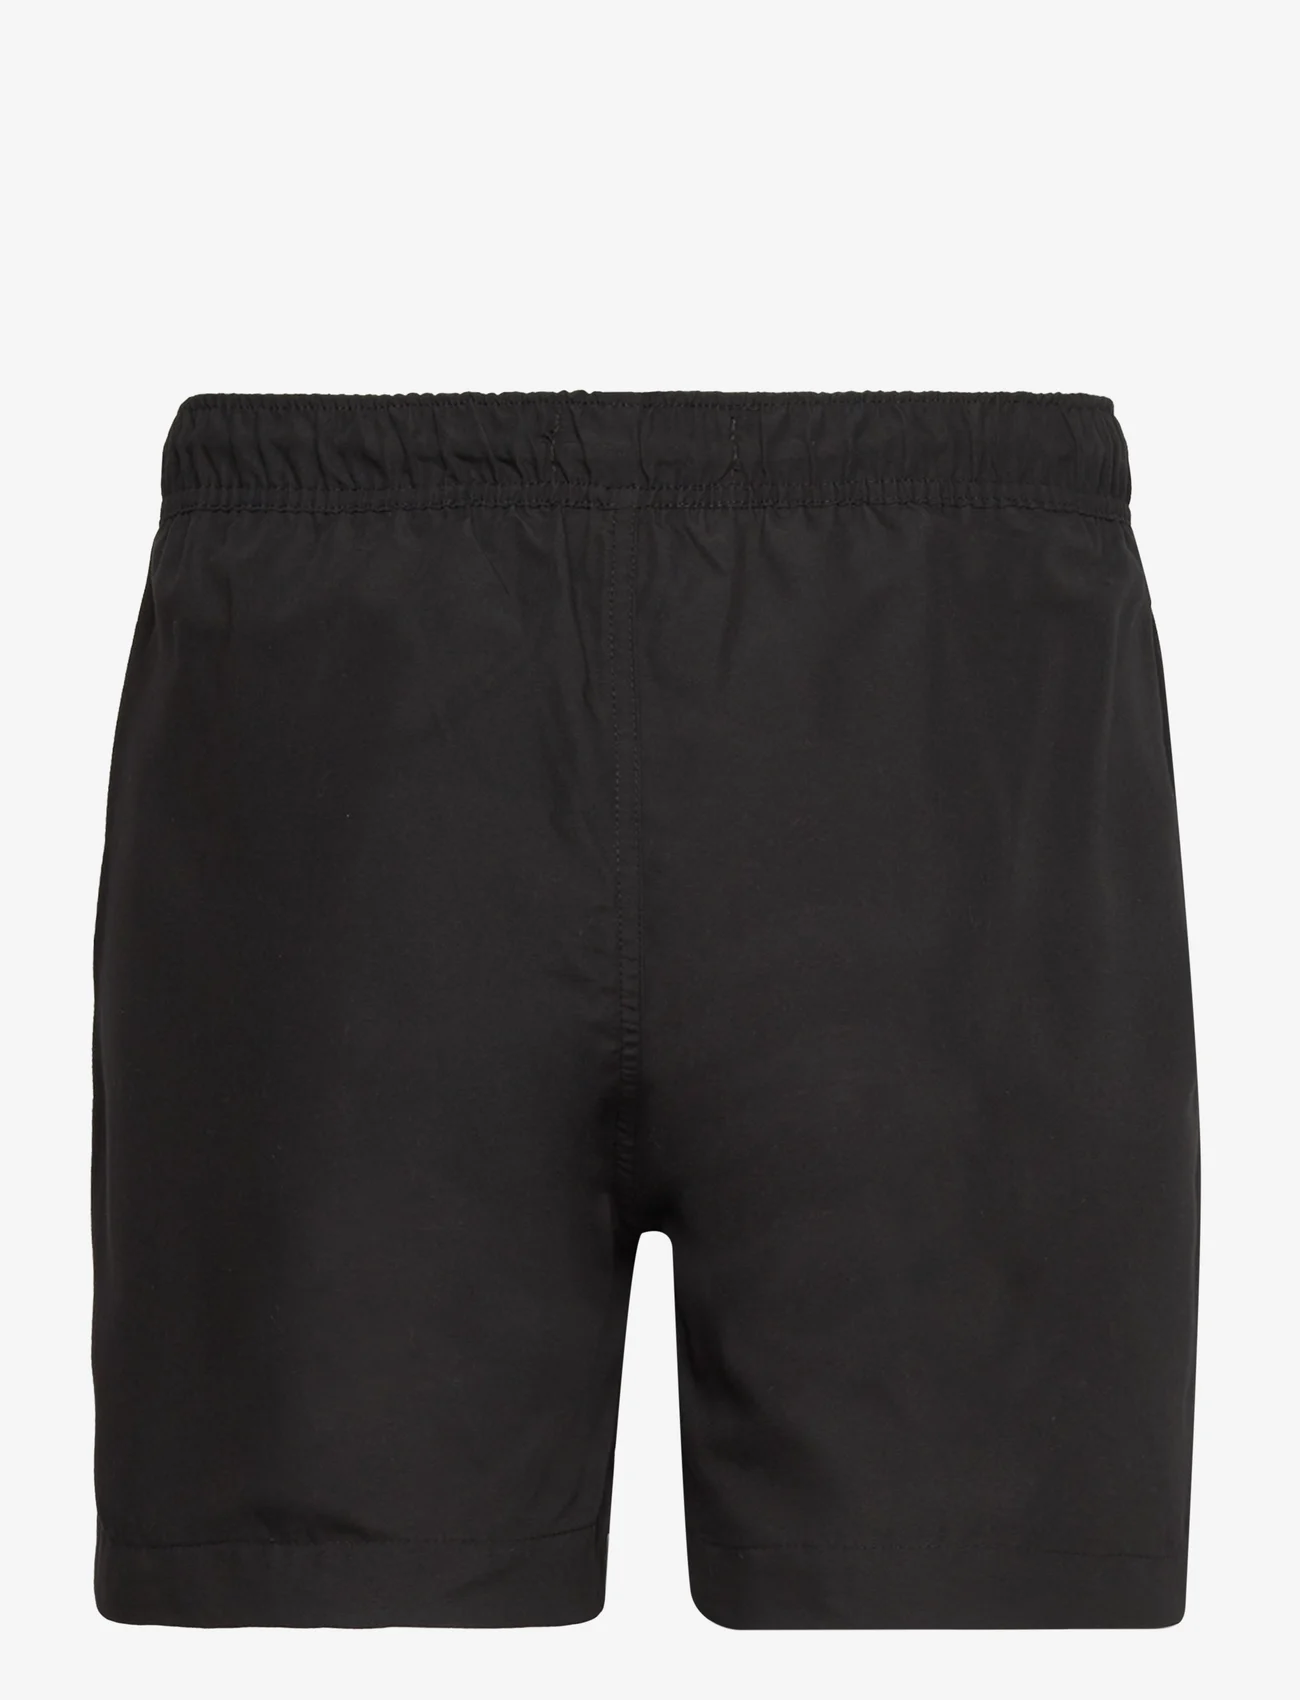 Clean Cut Copenhagen - Swim Shorts - badeshorts - black - 1